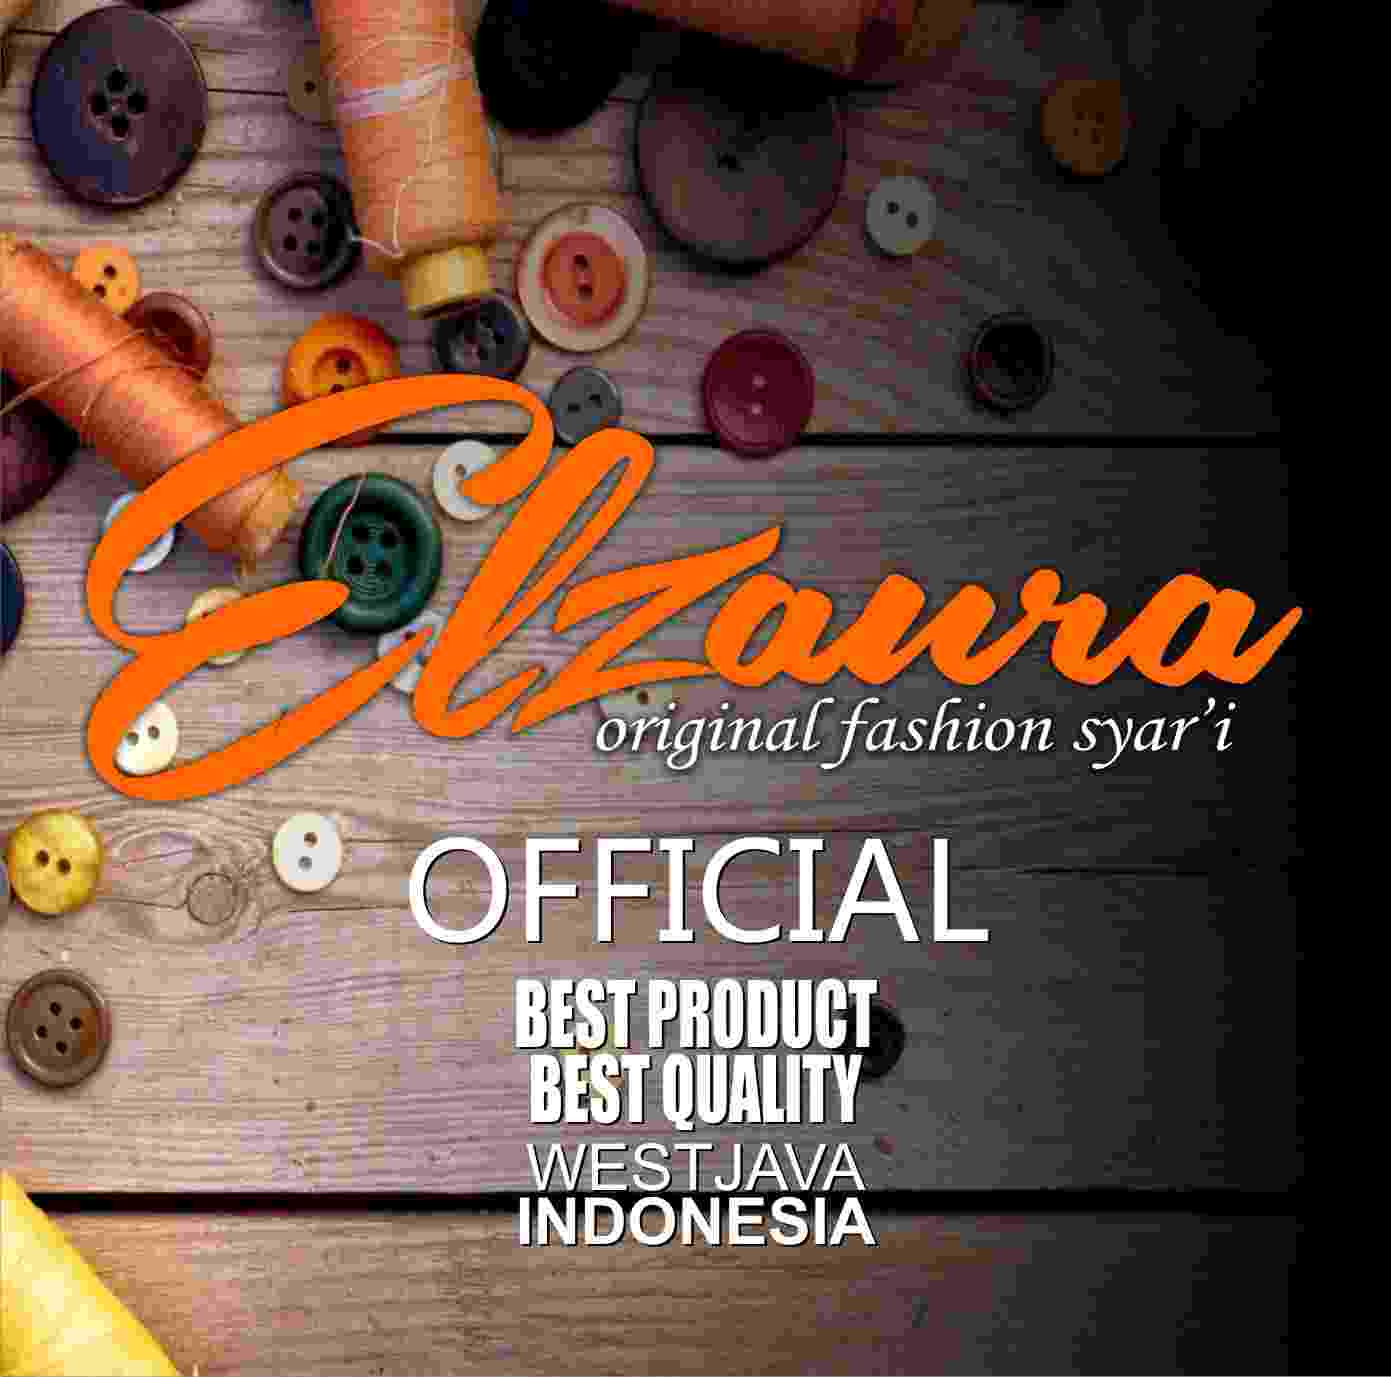 Tentang Kami Elzaura Pusat Produsen Koko, Hijab dan Gamis Syari Bandung. Gamis Syar'i Bercadar